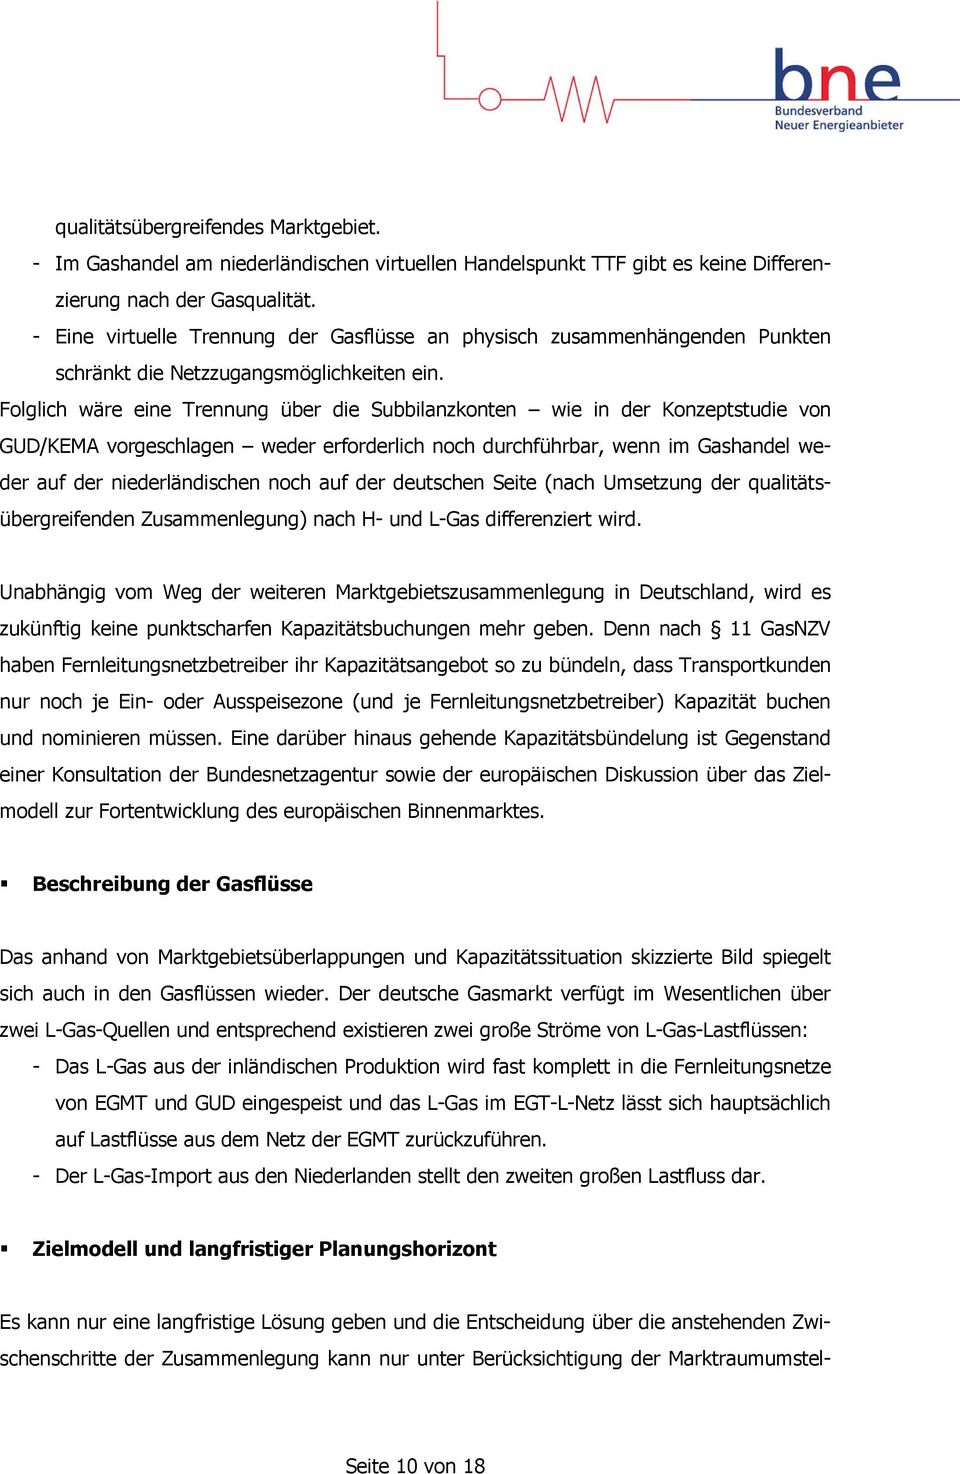 Folglich wäre eine Trennung über die Subbilanzkonten wie in der Konzeptstudie von GUD/KEMA vorgeschlagen weder erforderlich noch durchführbar, wenn im Gashandel weder auf der niederländischen noch